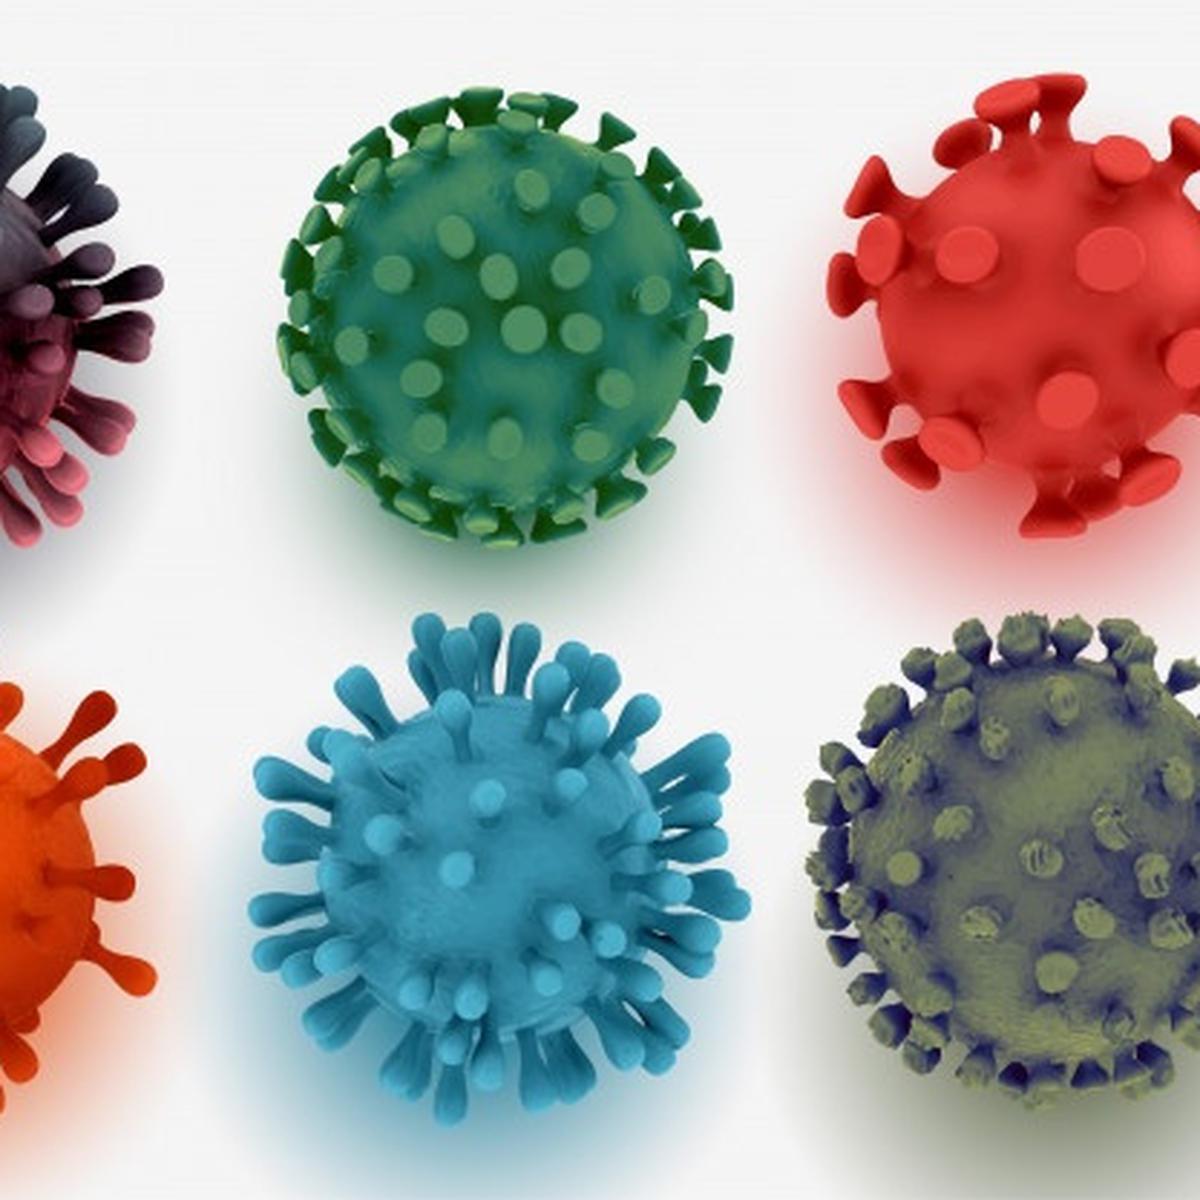 Berapa lama virus covid aktif dalam badan